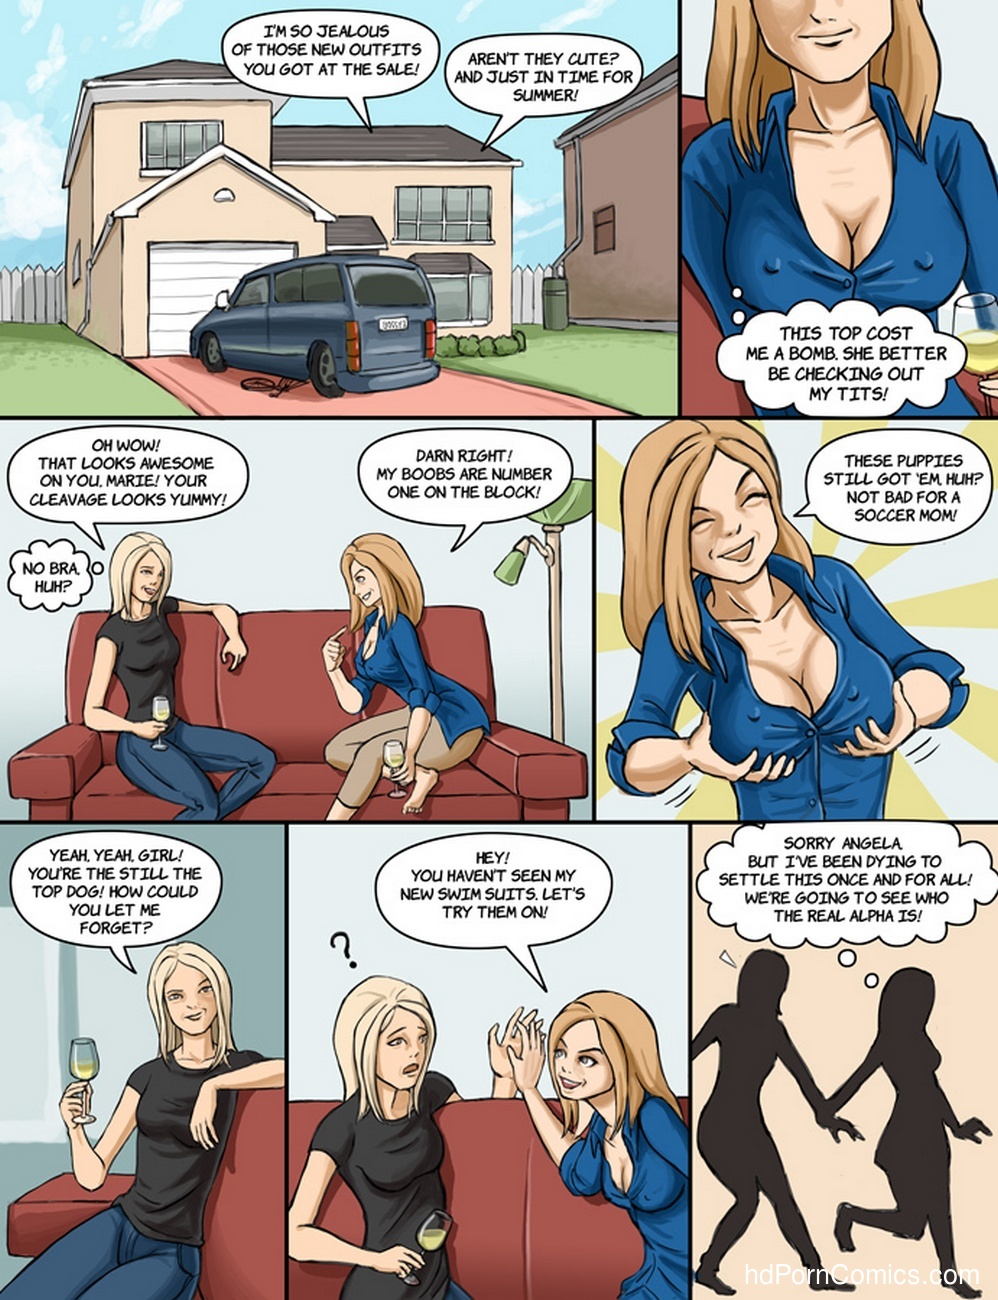 Best friends Sex Comic pic image